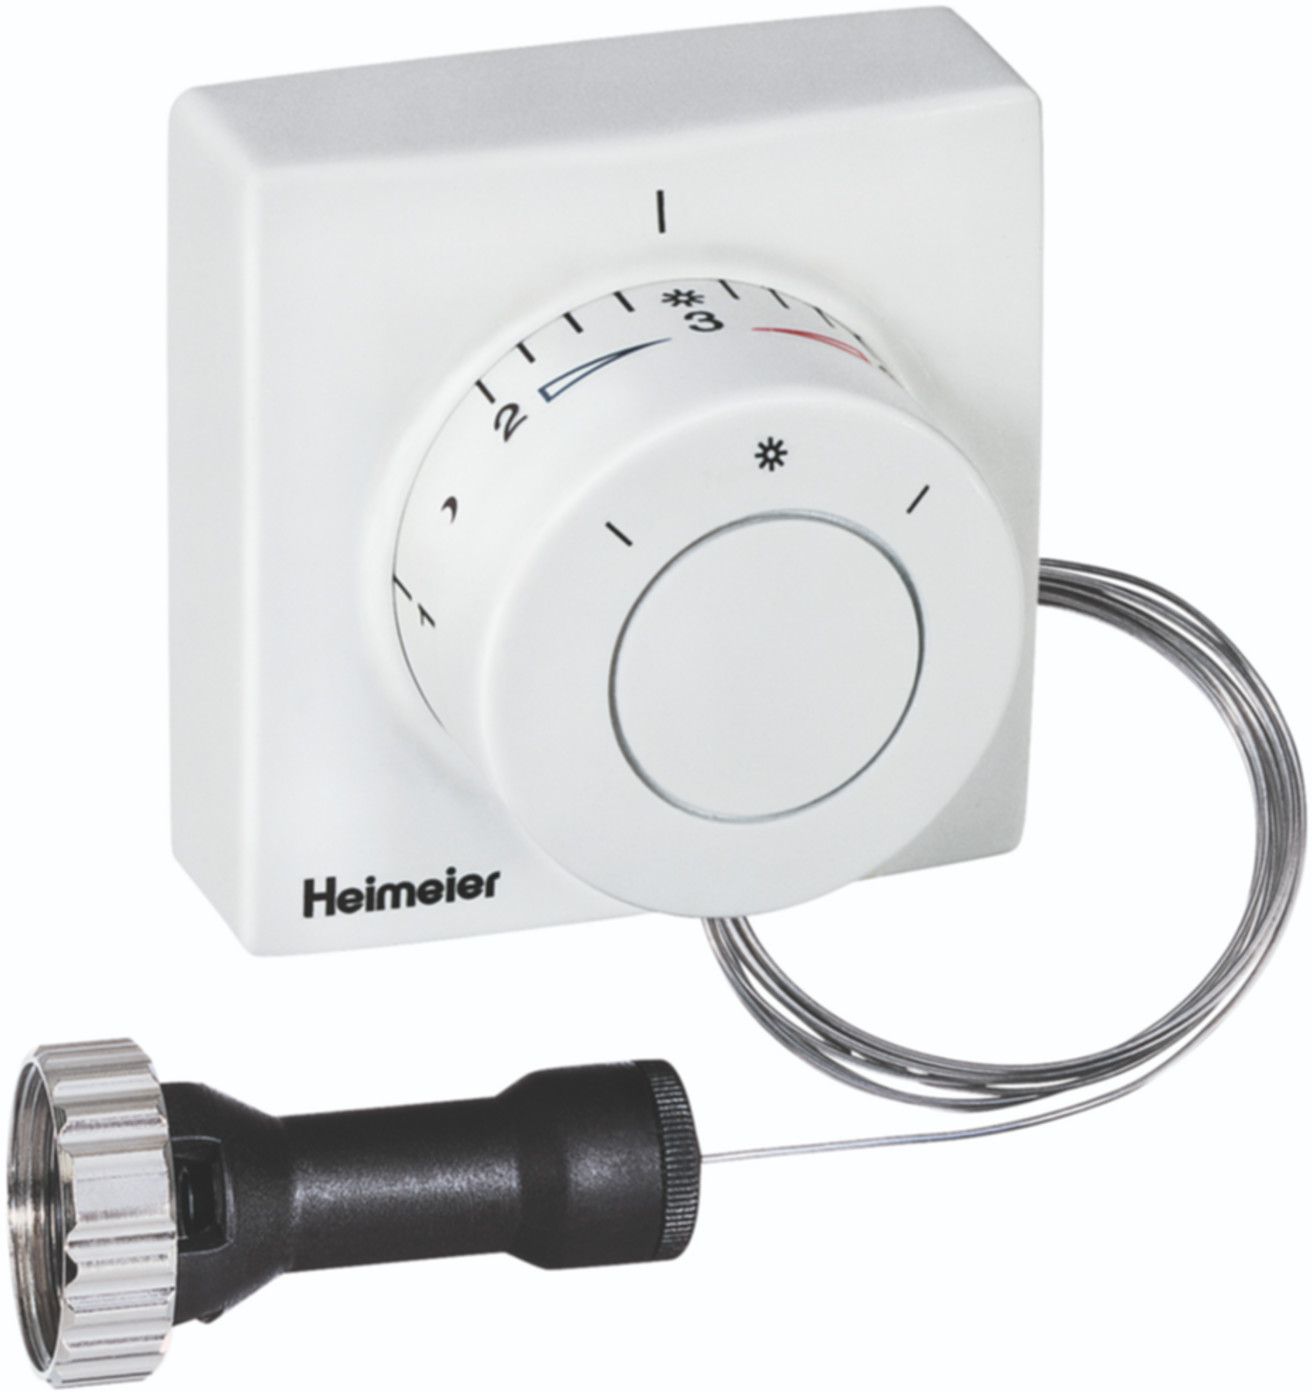 Thermostatkopf F m/Ferneinsteller 10 m 2810-00.500 - Heimeier Programm